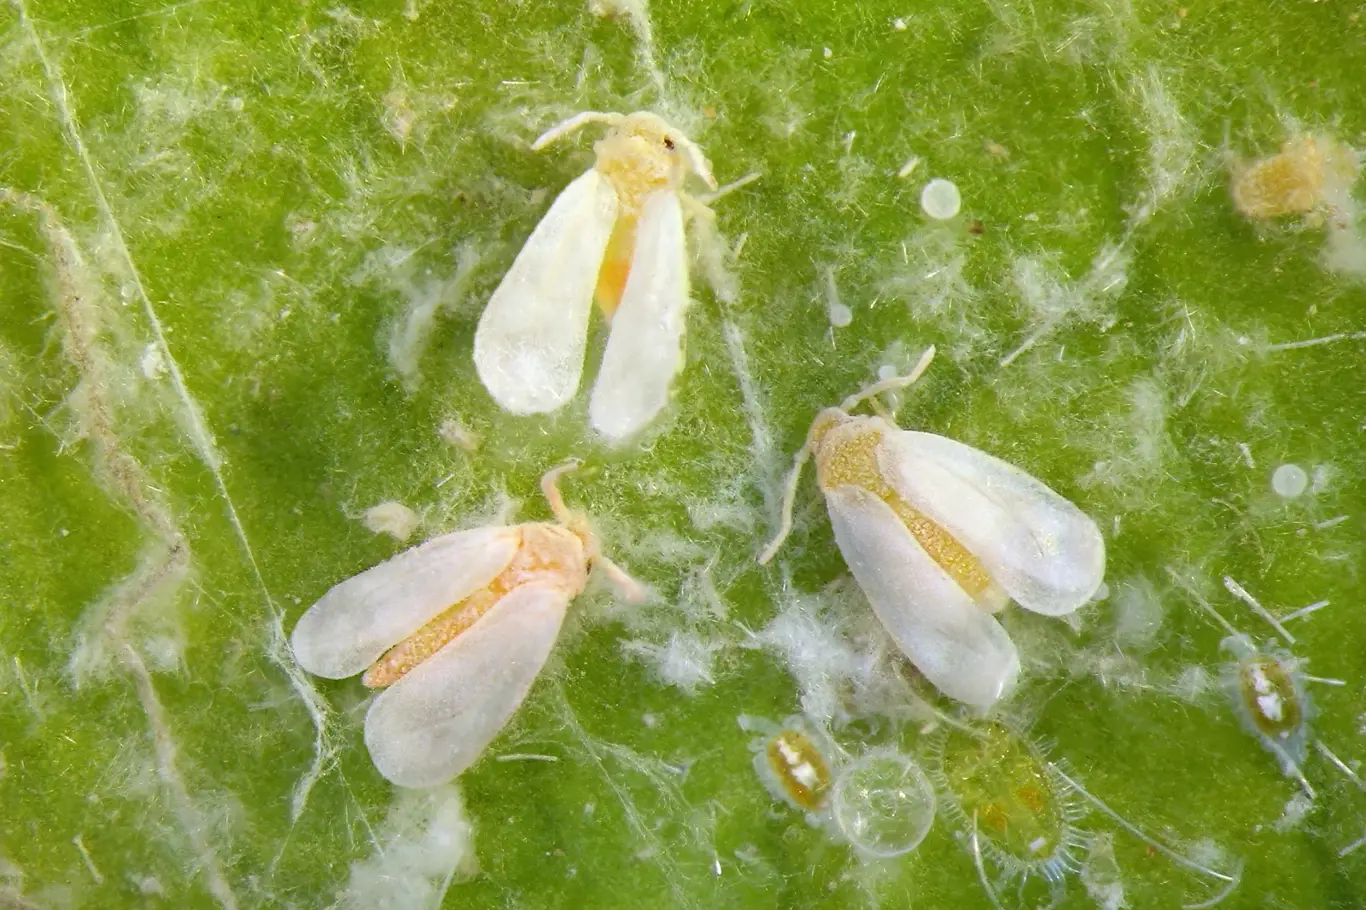 Drobné nenápadné bílé mušky vypadají na první pohled docela neškodně, ale jejich larvy dokáží zlikvidovat i celou úrodu.